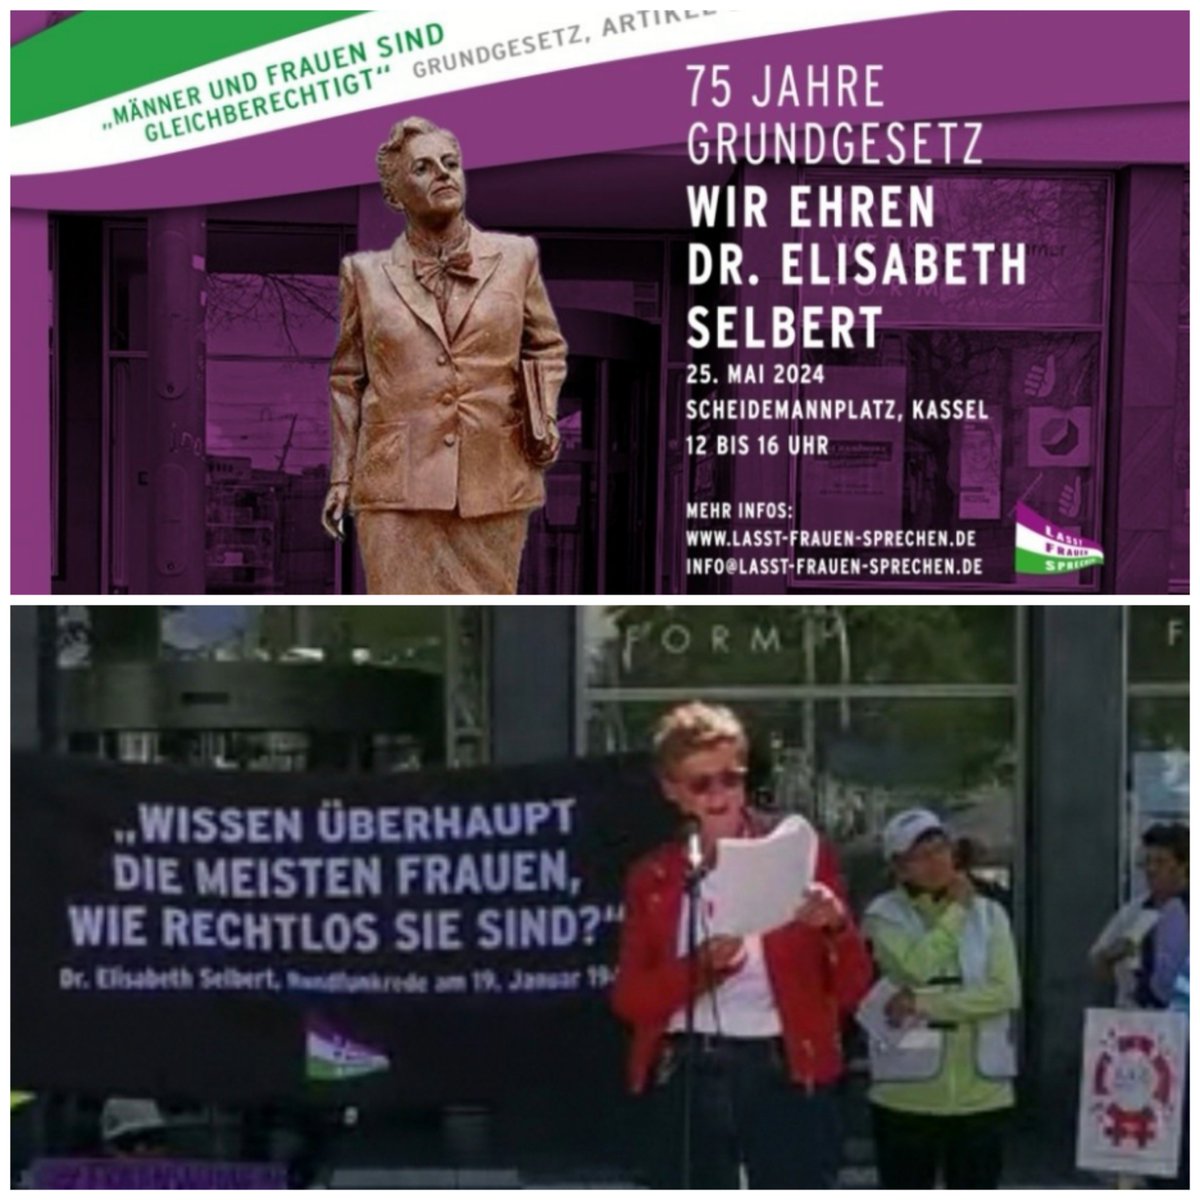 Jetzt zum Nachlesen - Gunda Schumanns Rede auf der großartigen Kundgebung von 'Lasst Frauen Sprechen' anlässlich '75 Jahre Grundgesetz' zu Ehren von Elisabeth Selbert :  laz-reloaded.de/wp-content/upl…  
weitere Infos und Links dazu auf unserer Webseite 
laz-reloaded.de/2024-2/